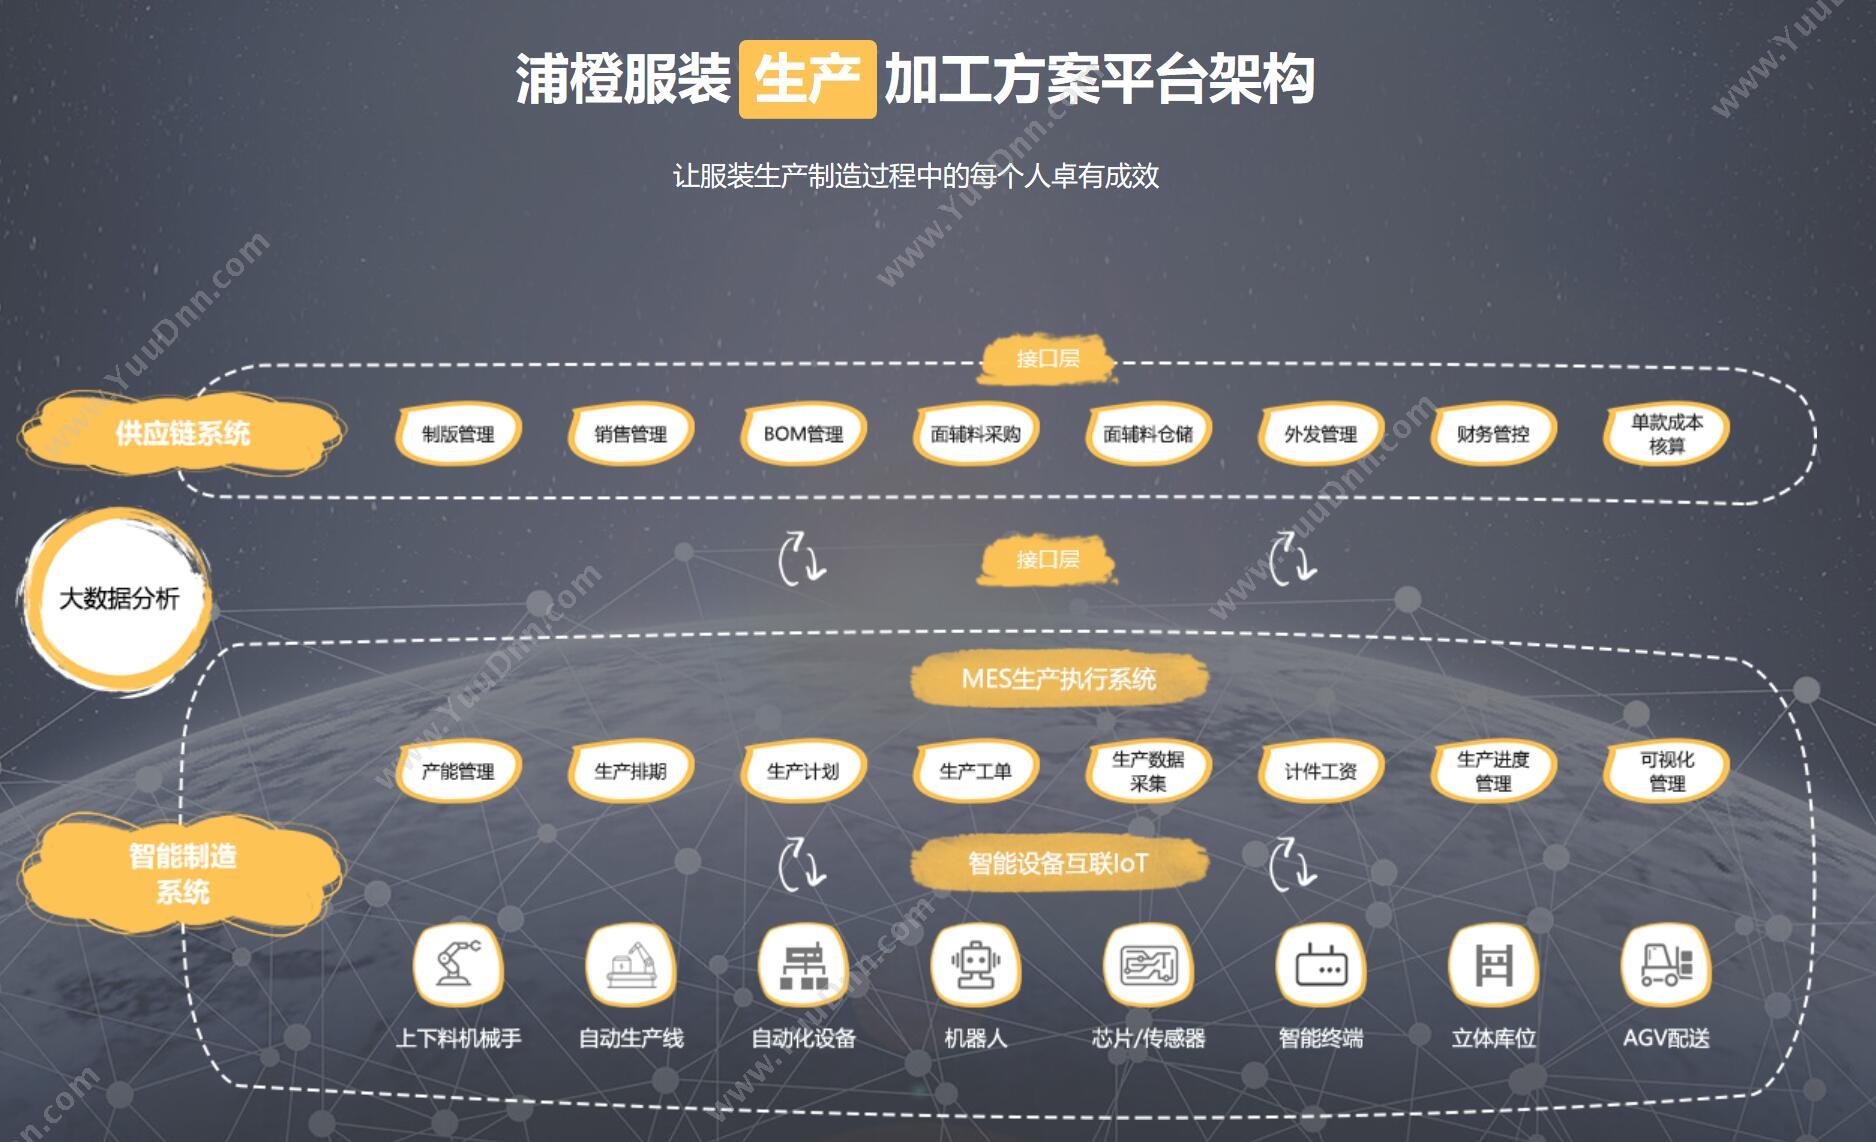 上海浦橙信息技术业有限公司 浦橙服装供应链与生产系统 服装厂